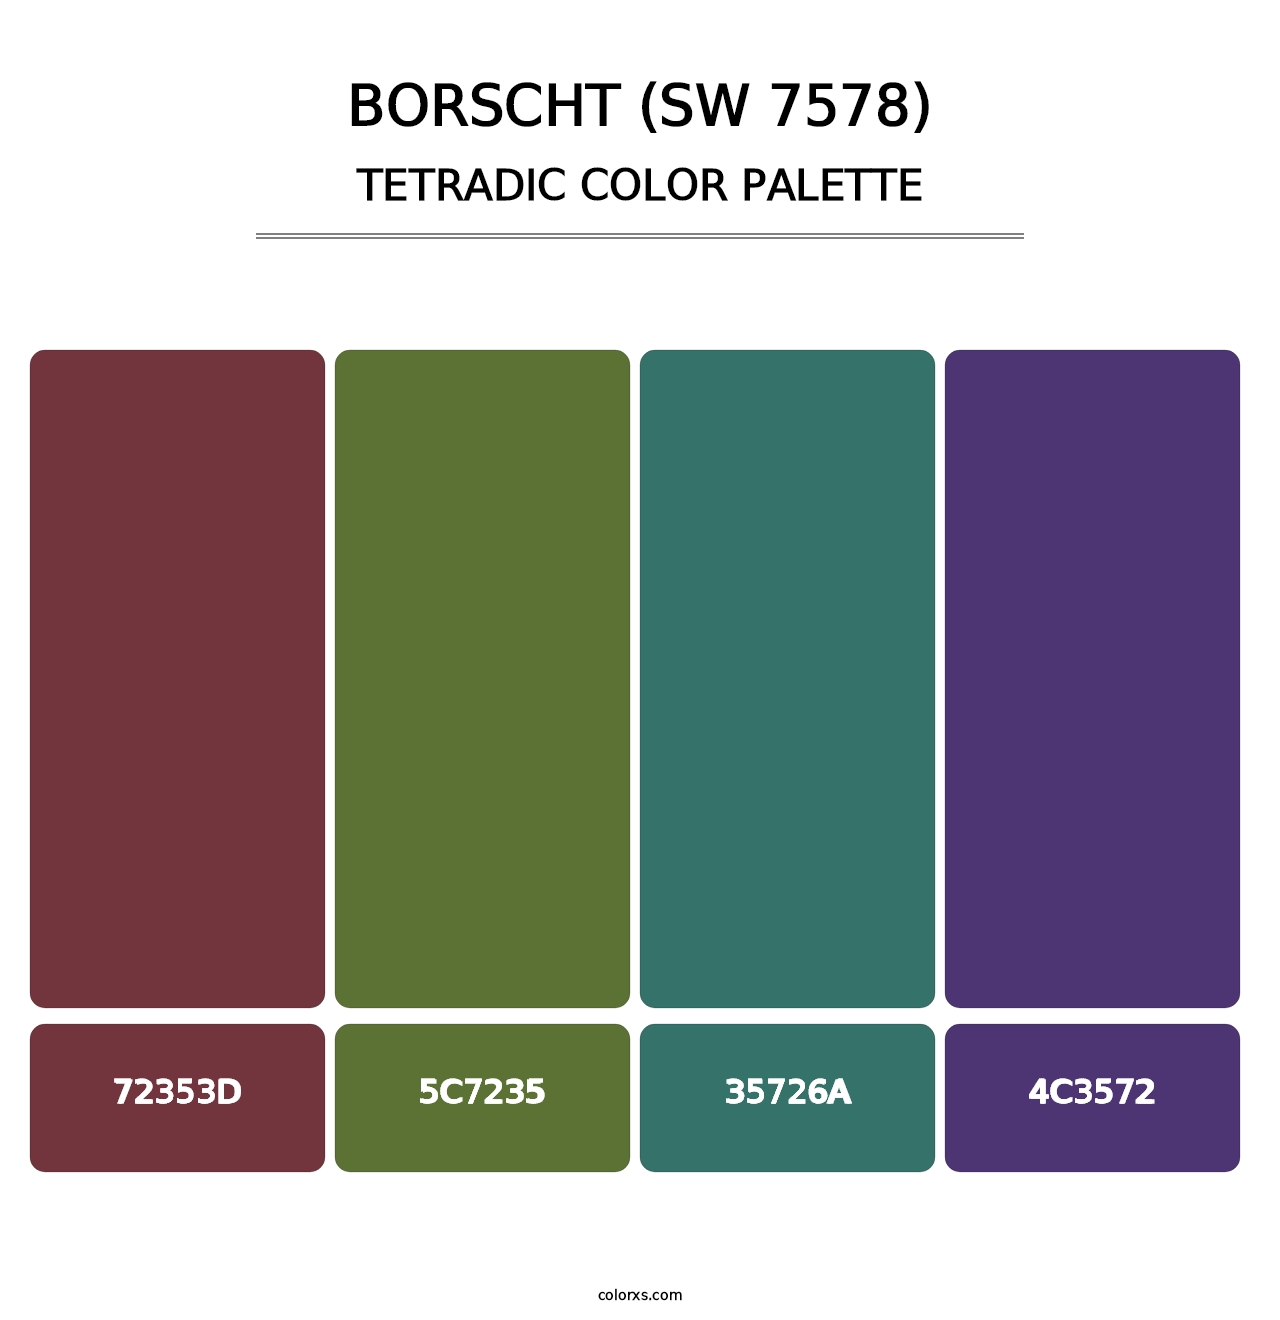 Borscht (SW 7578) - Tetradic Color Palette